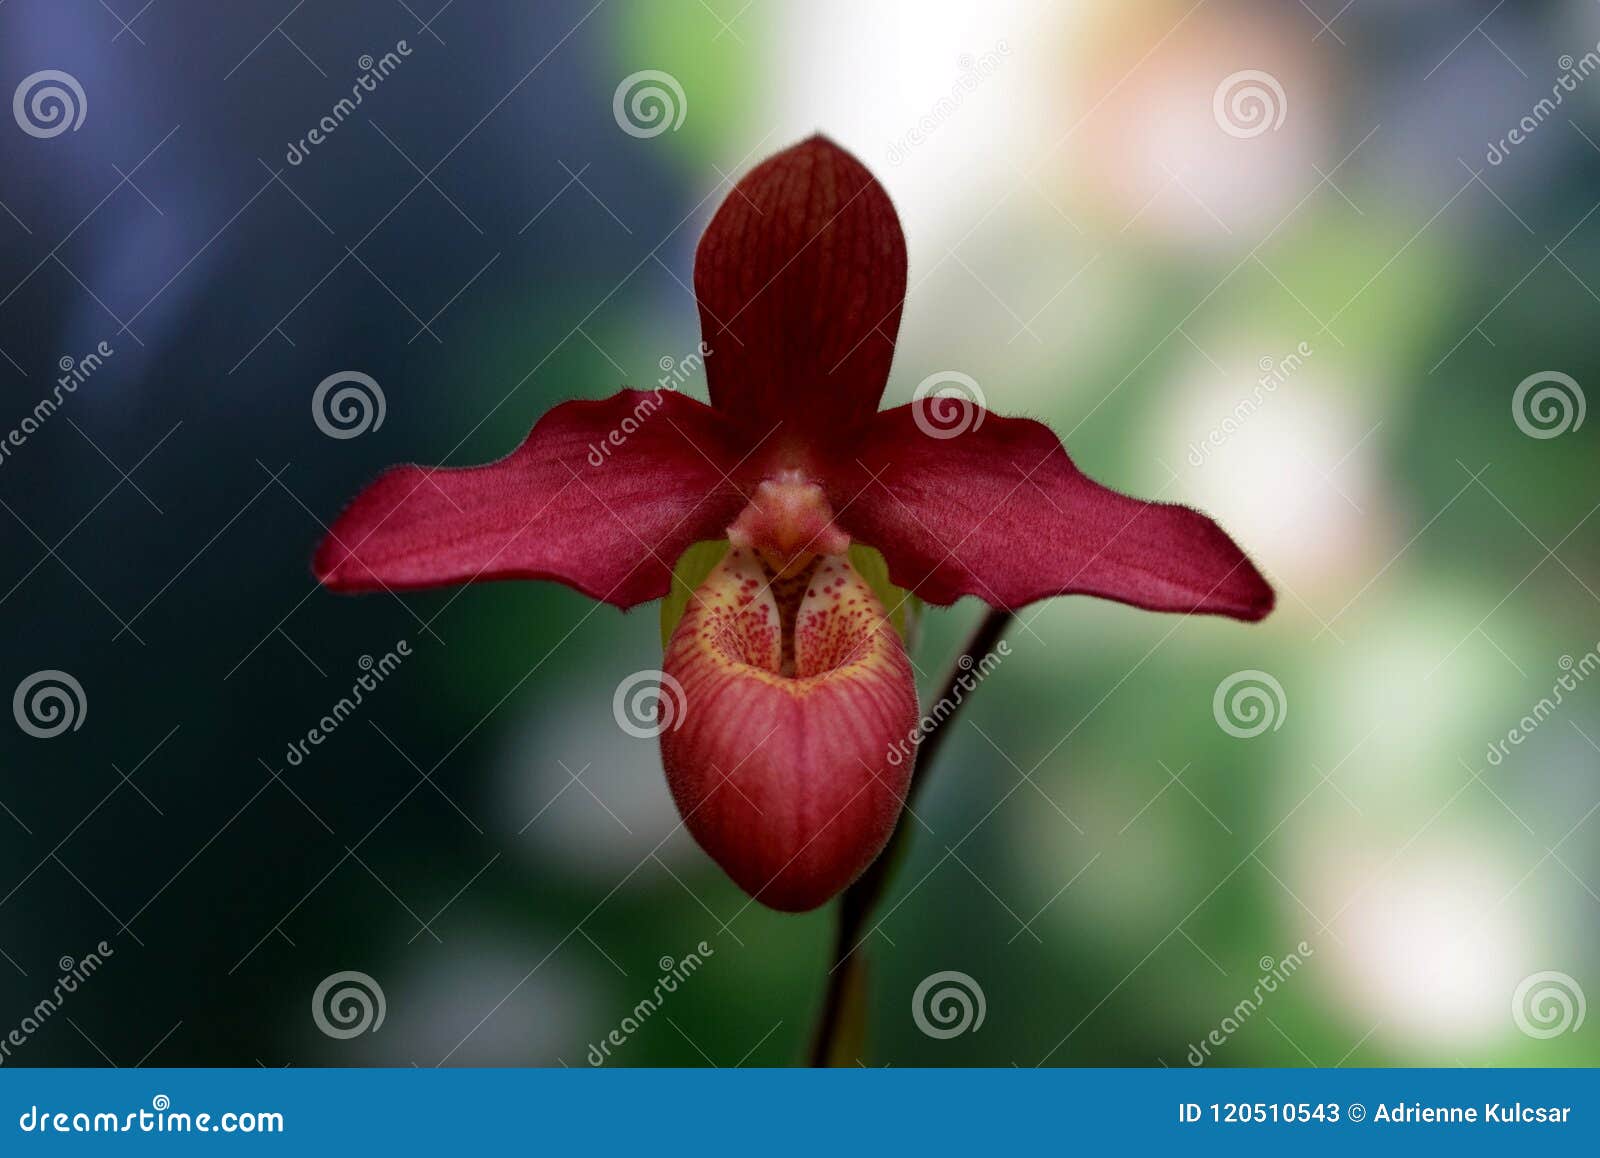 Paphiopedilum Orchid Care | Guna Orchids